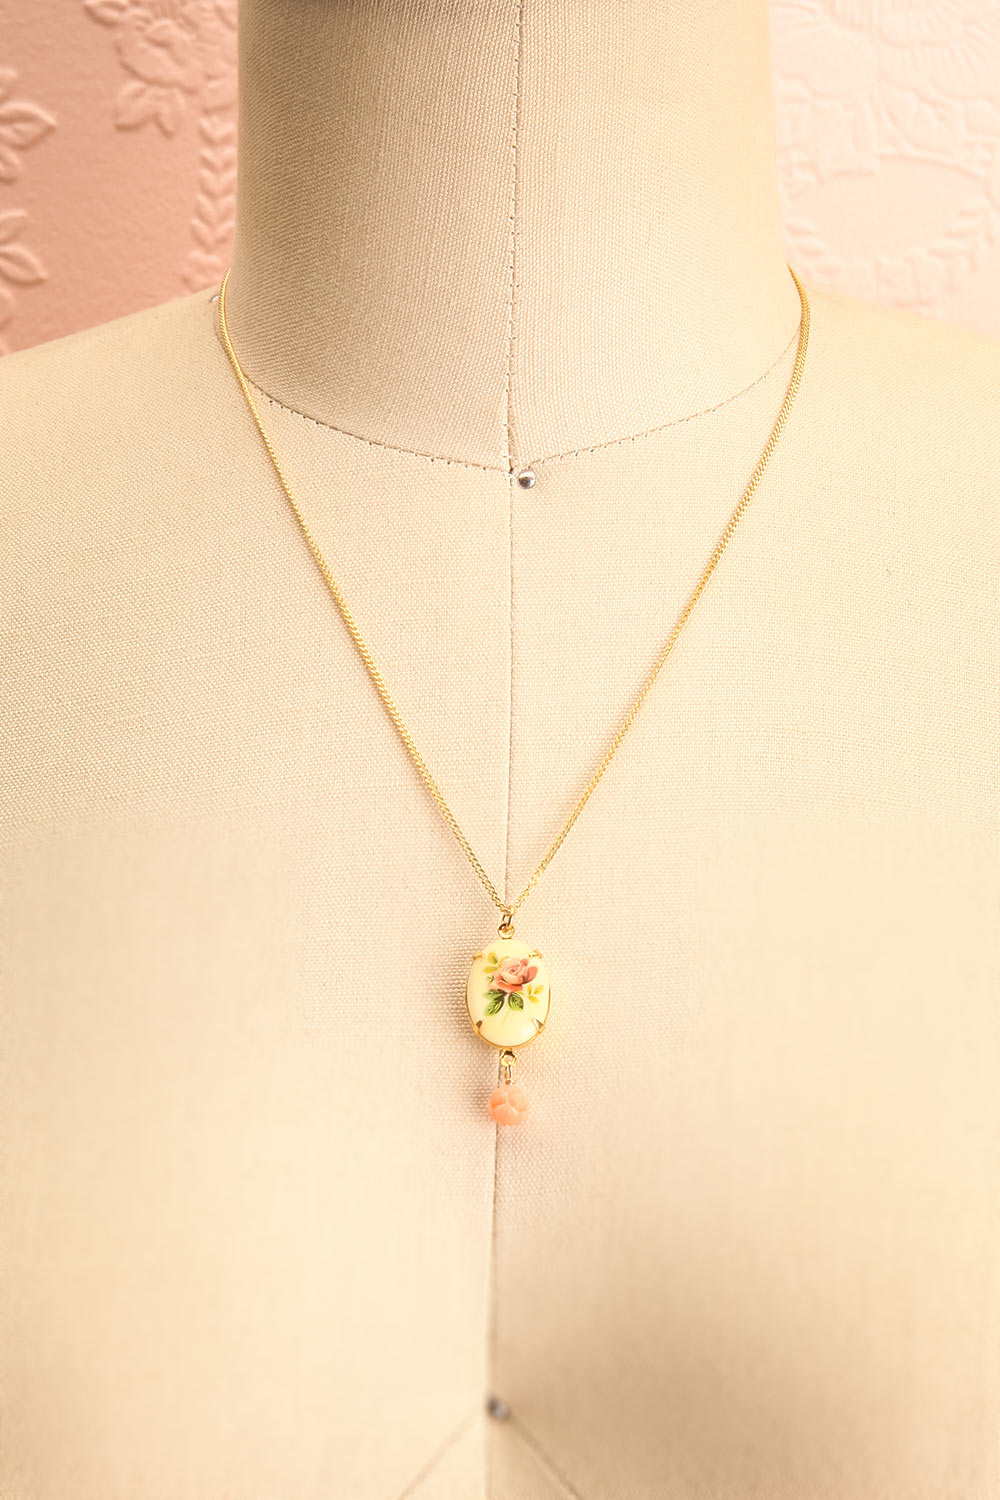 Marie Doro White & Golden Floral Pendant Necklace | Boutique 1861 3